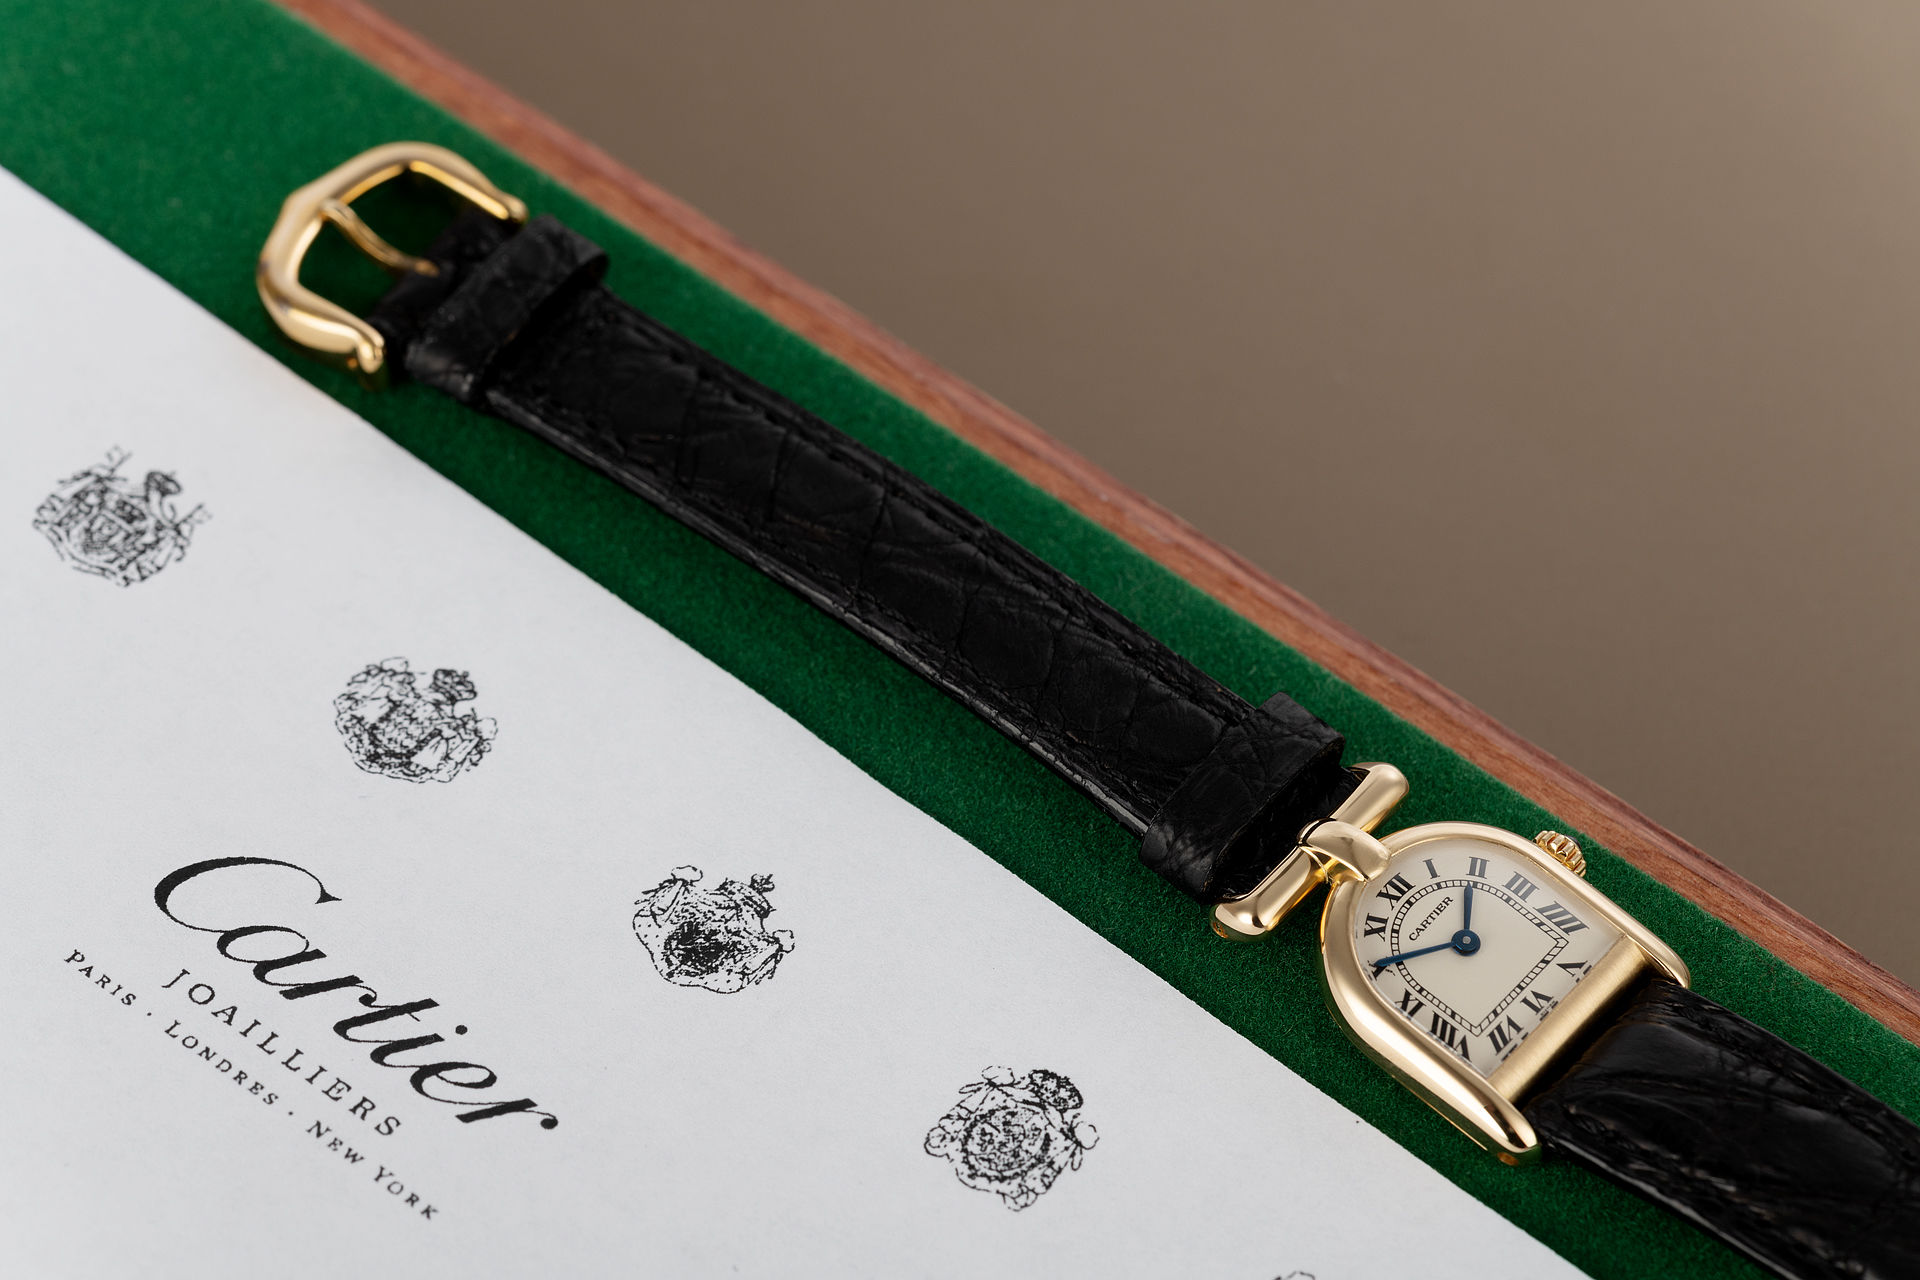 Vintage model  | ref Unknown (Cartier Stirrup Watch) | Cartier Stirrup